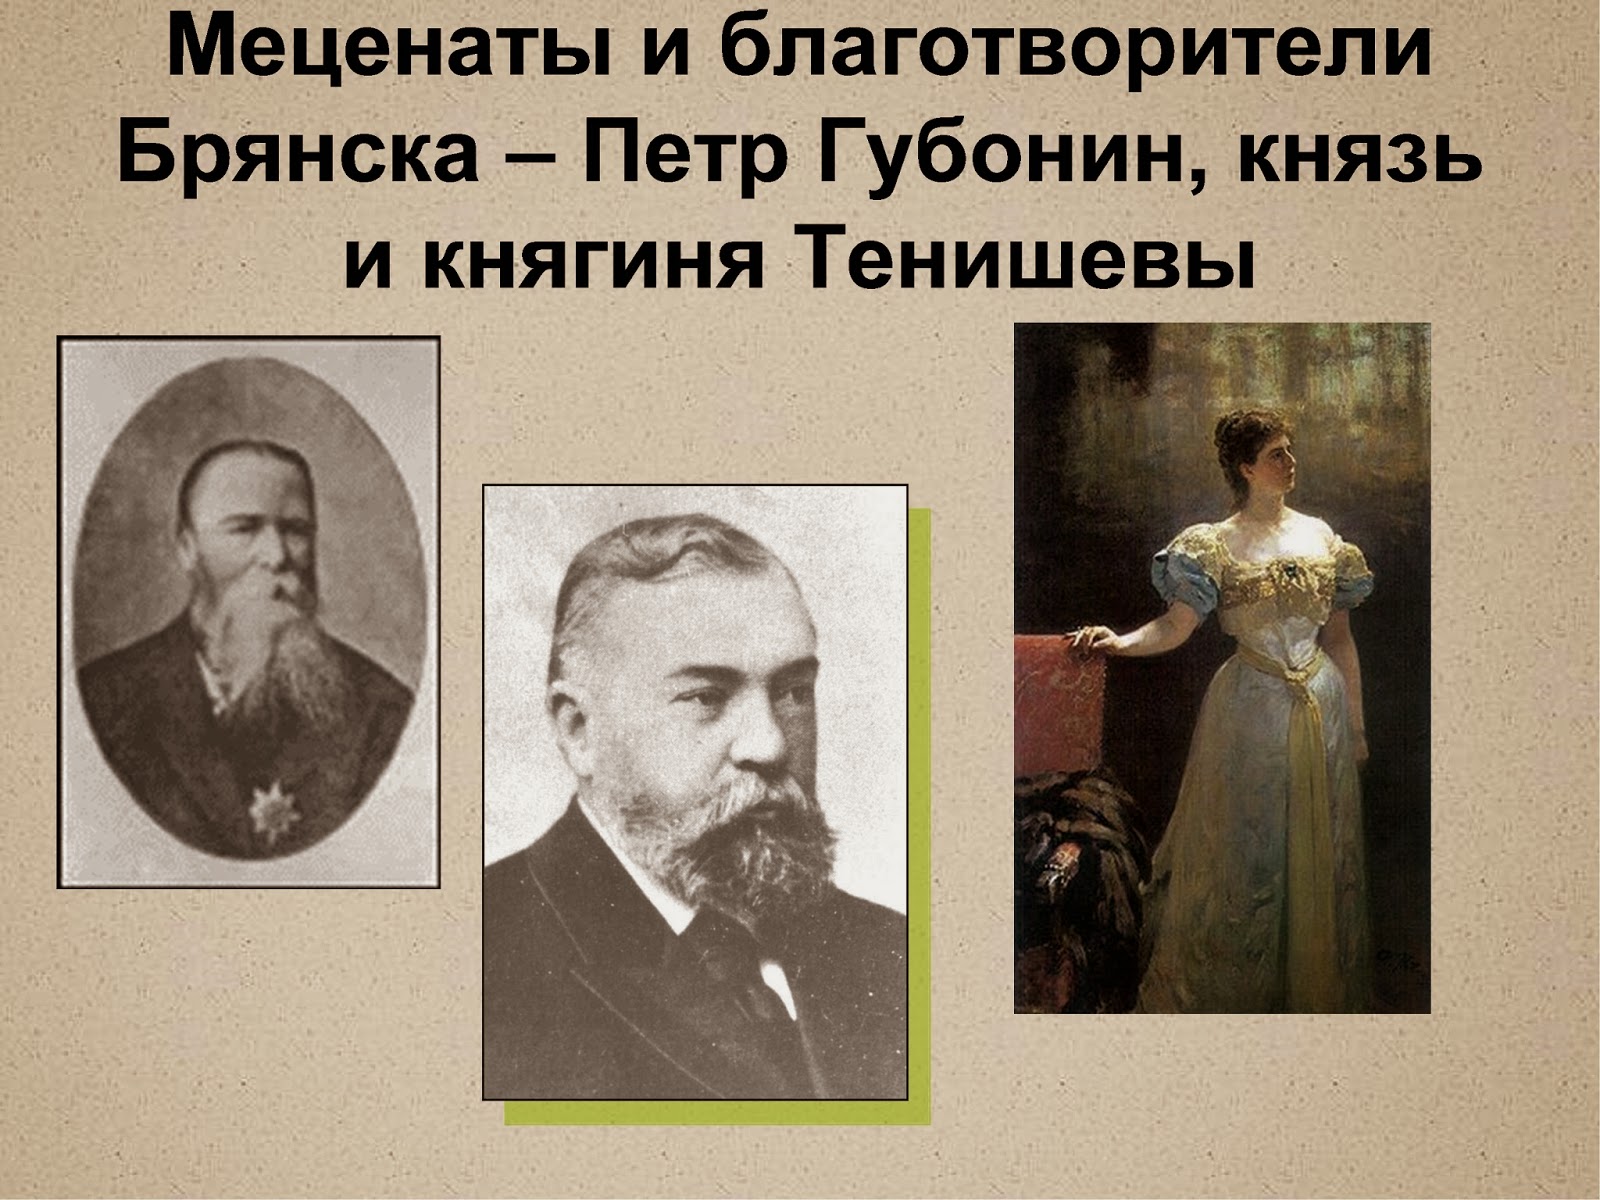 Какие есть меценаты. Меценаты 19-20 века в России. Благотворители и меценаты России. Известные благотворители. Современные меценаты.